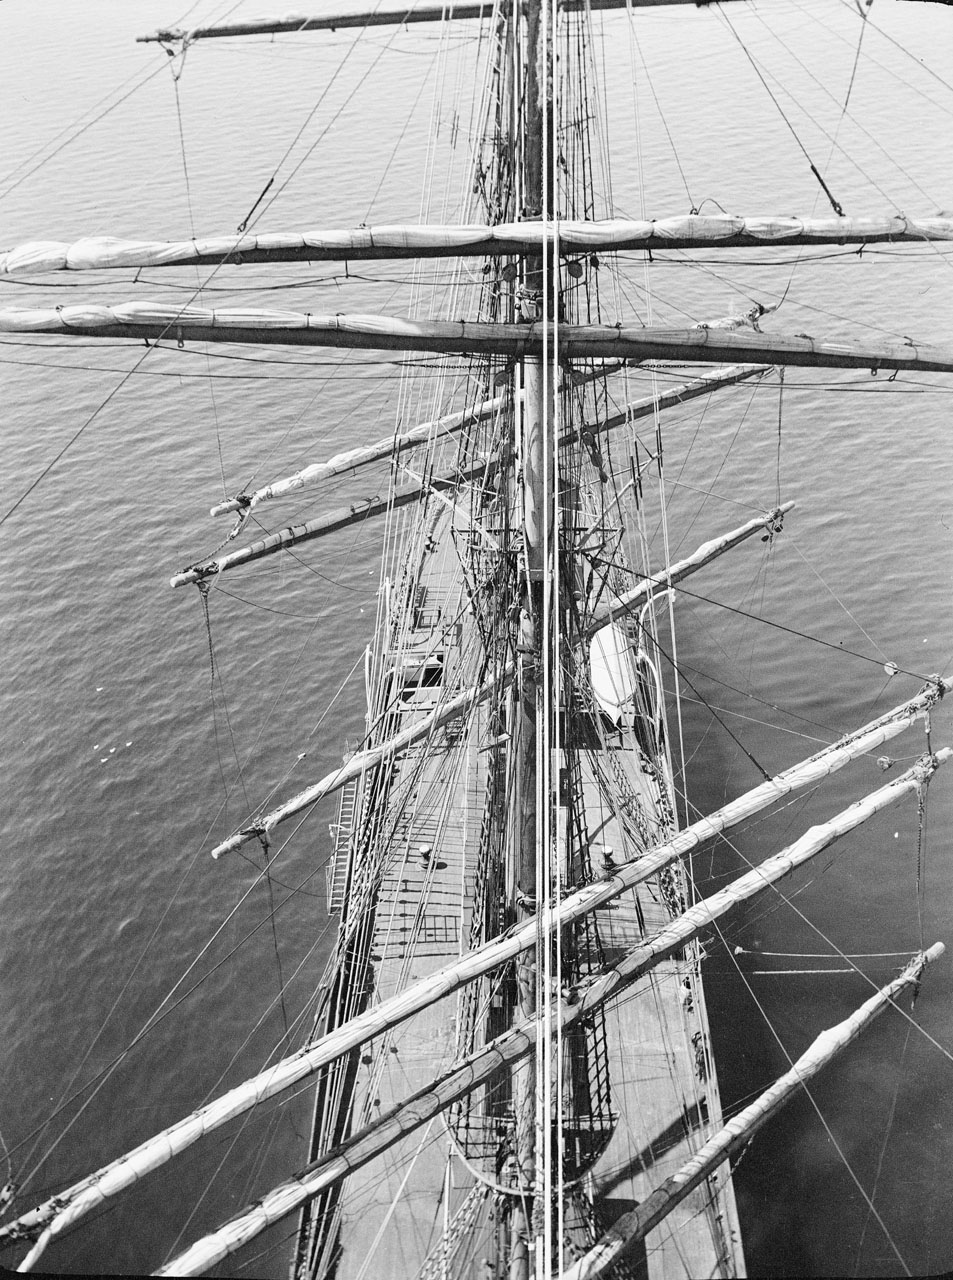 Vue vers la proue depuis la mâture sur le ‘Parma’, au mouillage. Alan Villiers, 1932-33. Le travail de Villiers décrit de façon vivante la période du début du XXe siècle pendant laquelle les voiliers de la marine marchande ou “grands navires” furent en rapide déclin.